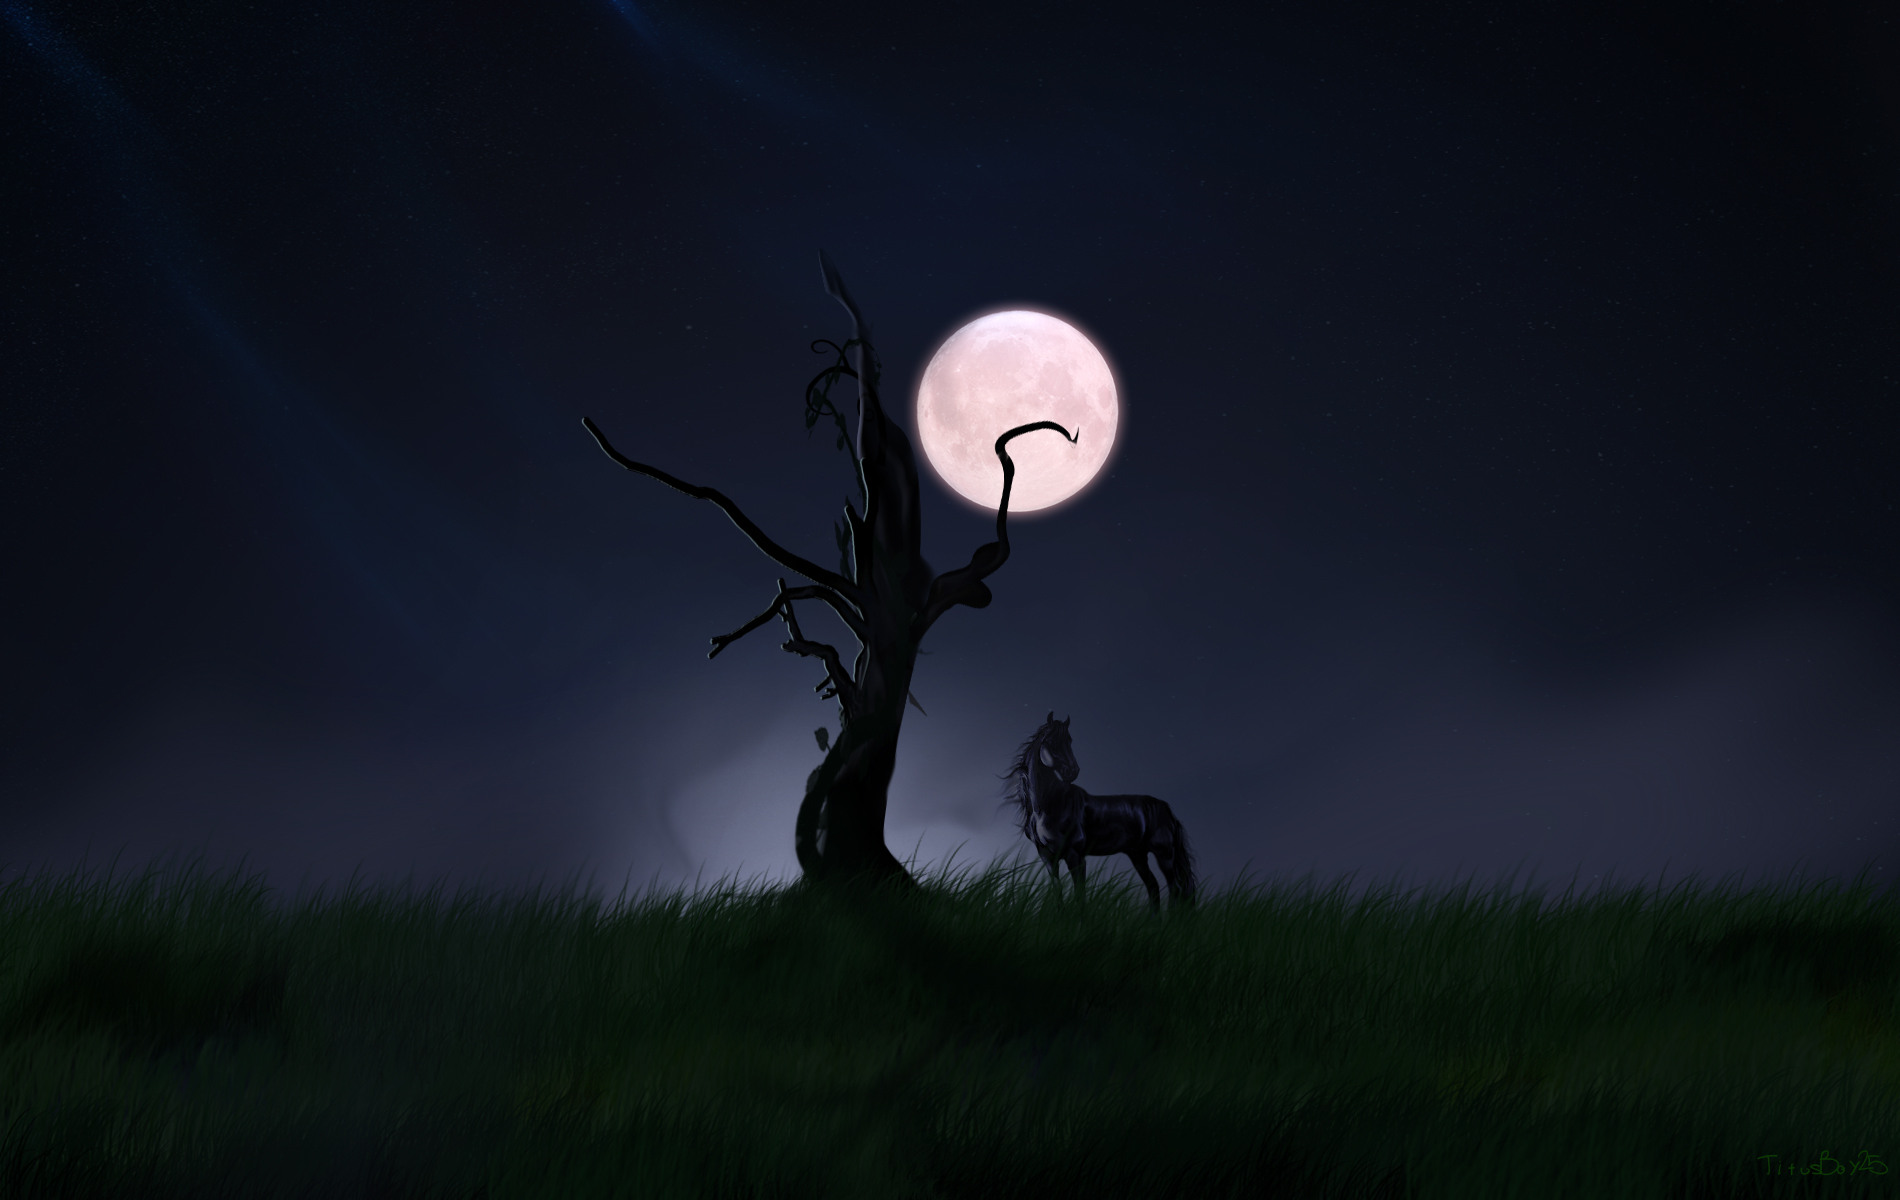 Horse In Landscape Night Wallpaper Hd Wallpaper - Horses In Night Landscape - HD Wallpaper 